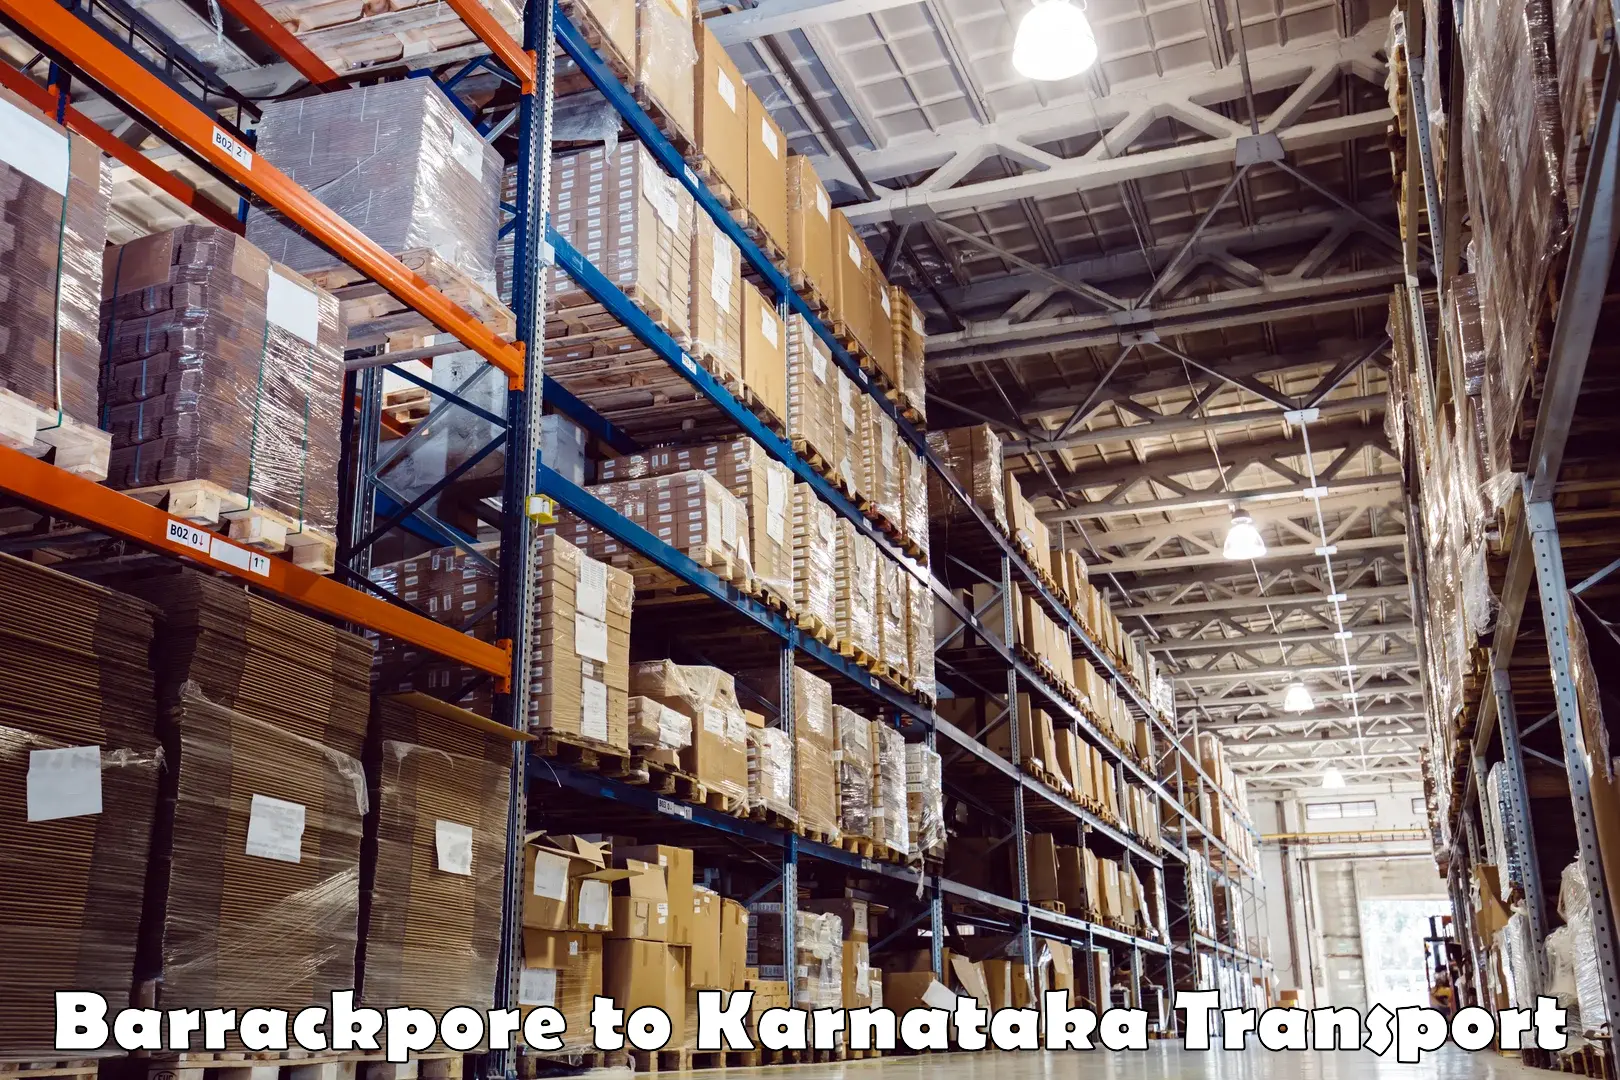 Parcel transport services Barrackpore to Karnataka